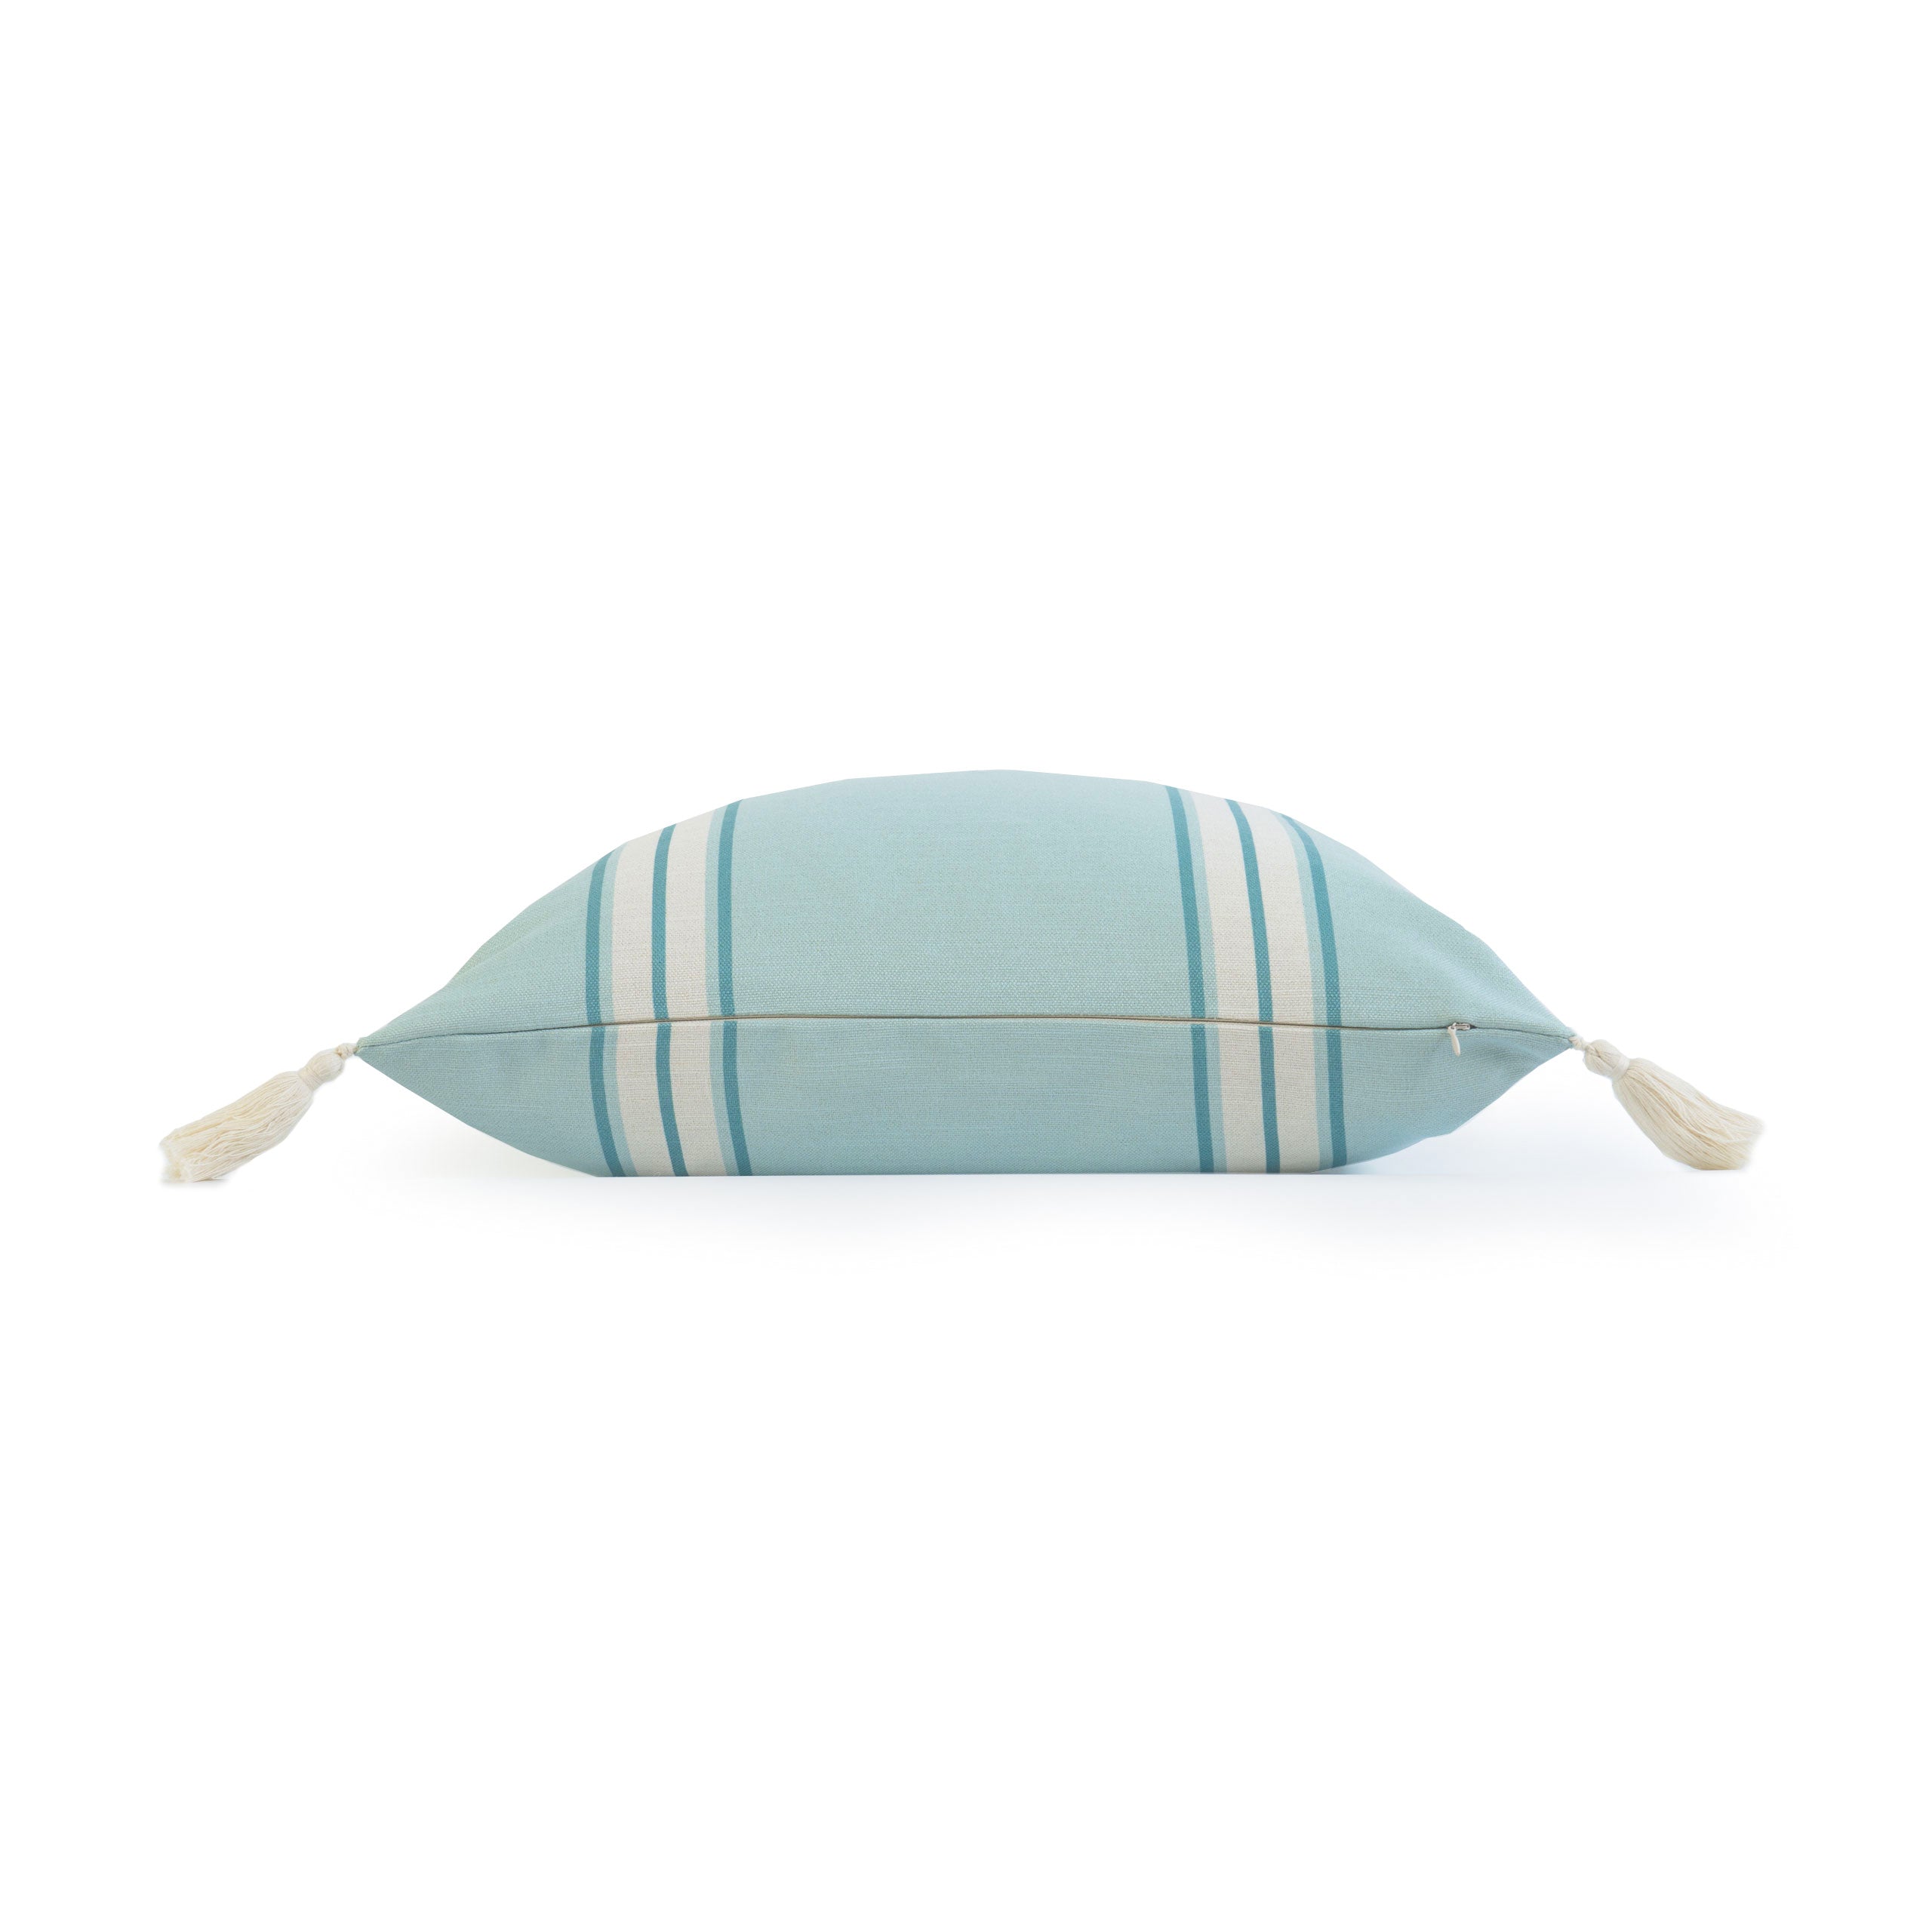 Coastal Indoor Outdoor Pillow Cover, Aviv, Striped Tassel, Aqua Turquoise, 20"x20"